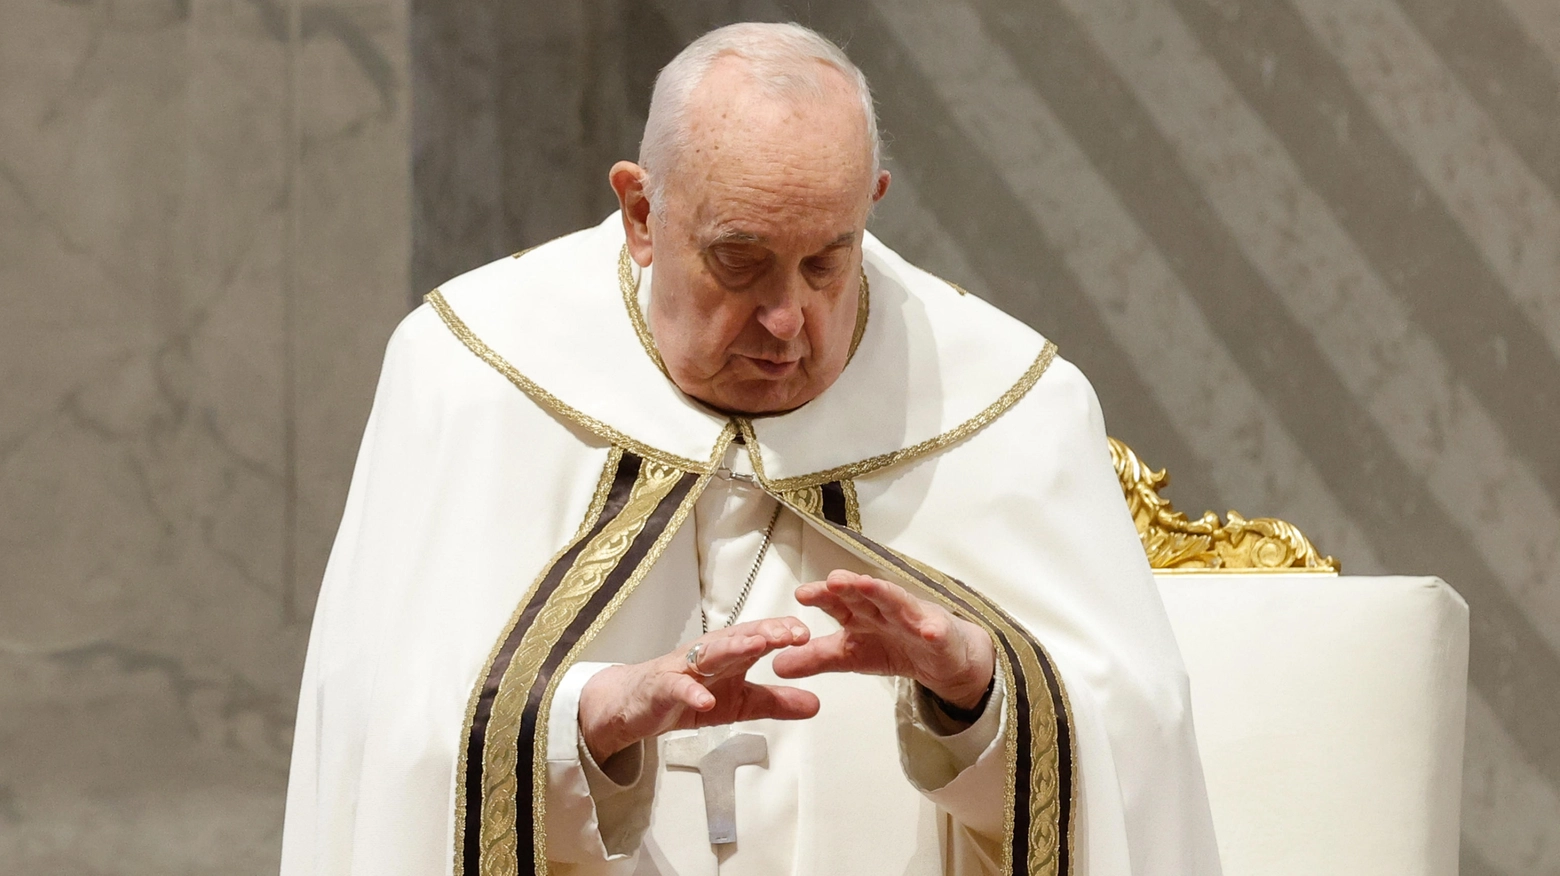 Anche quest’anno Bergoglio ha scelto di celebrare la messa del giovedì santo in un luogo simbolico. Seduto sulla sedia a rotelle, la lavanda dei piedi tra la commozione delle detenute